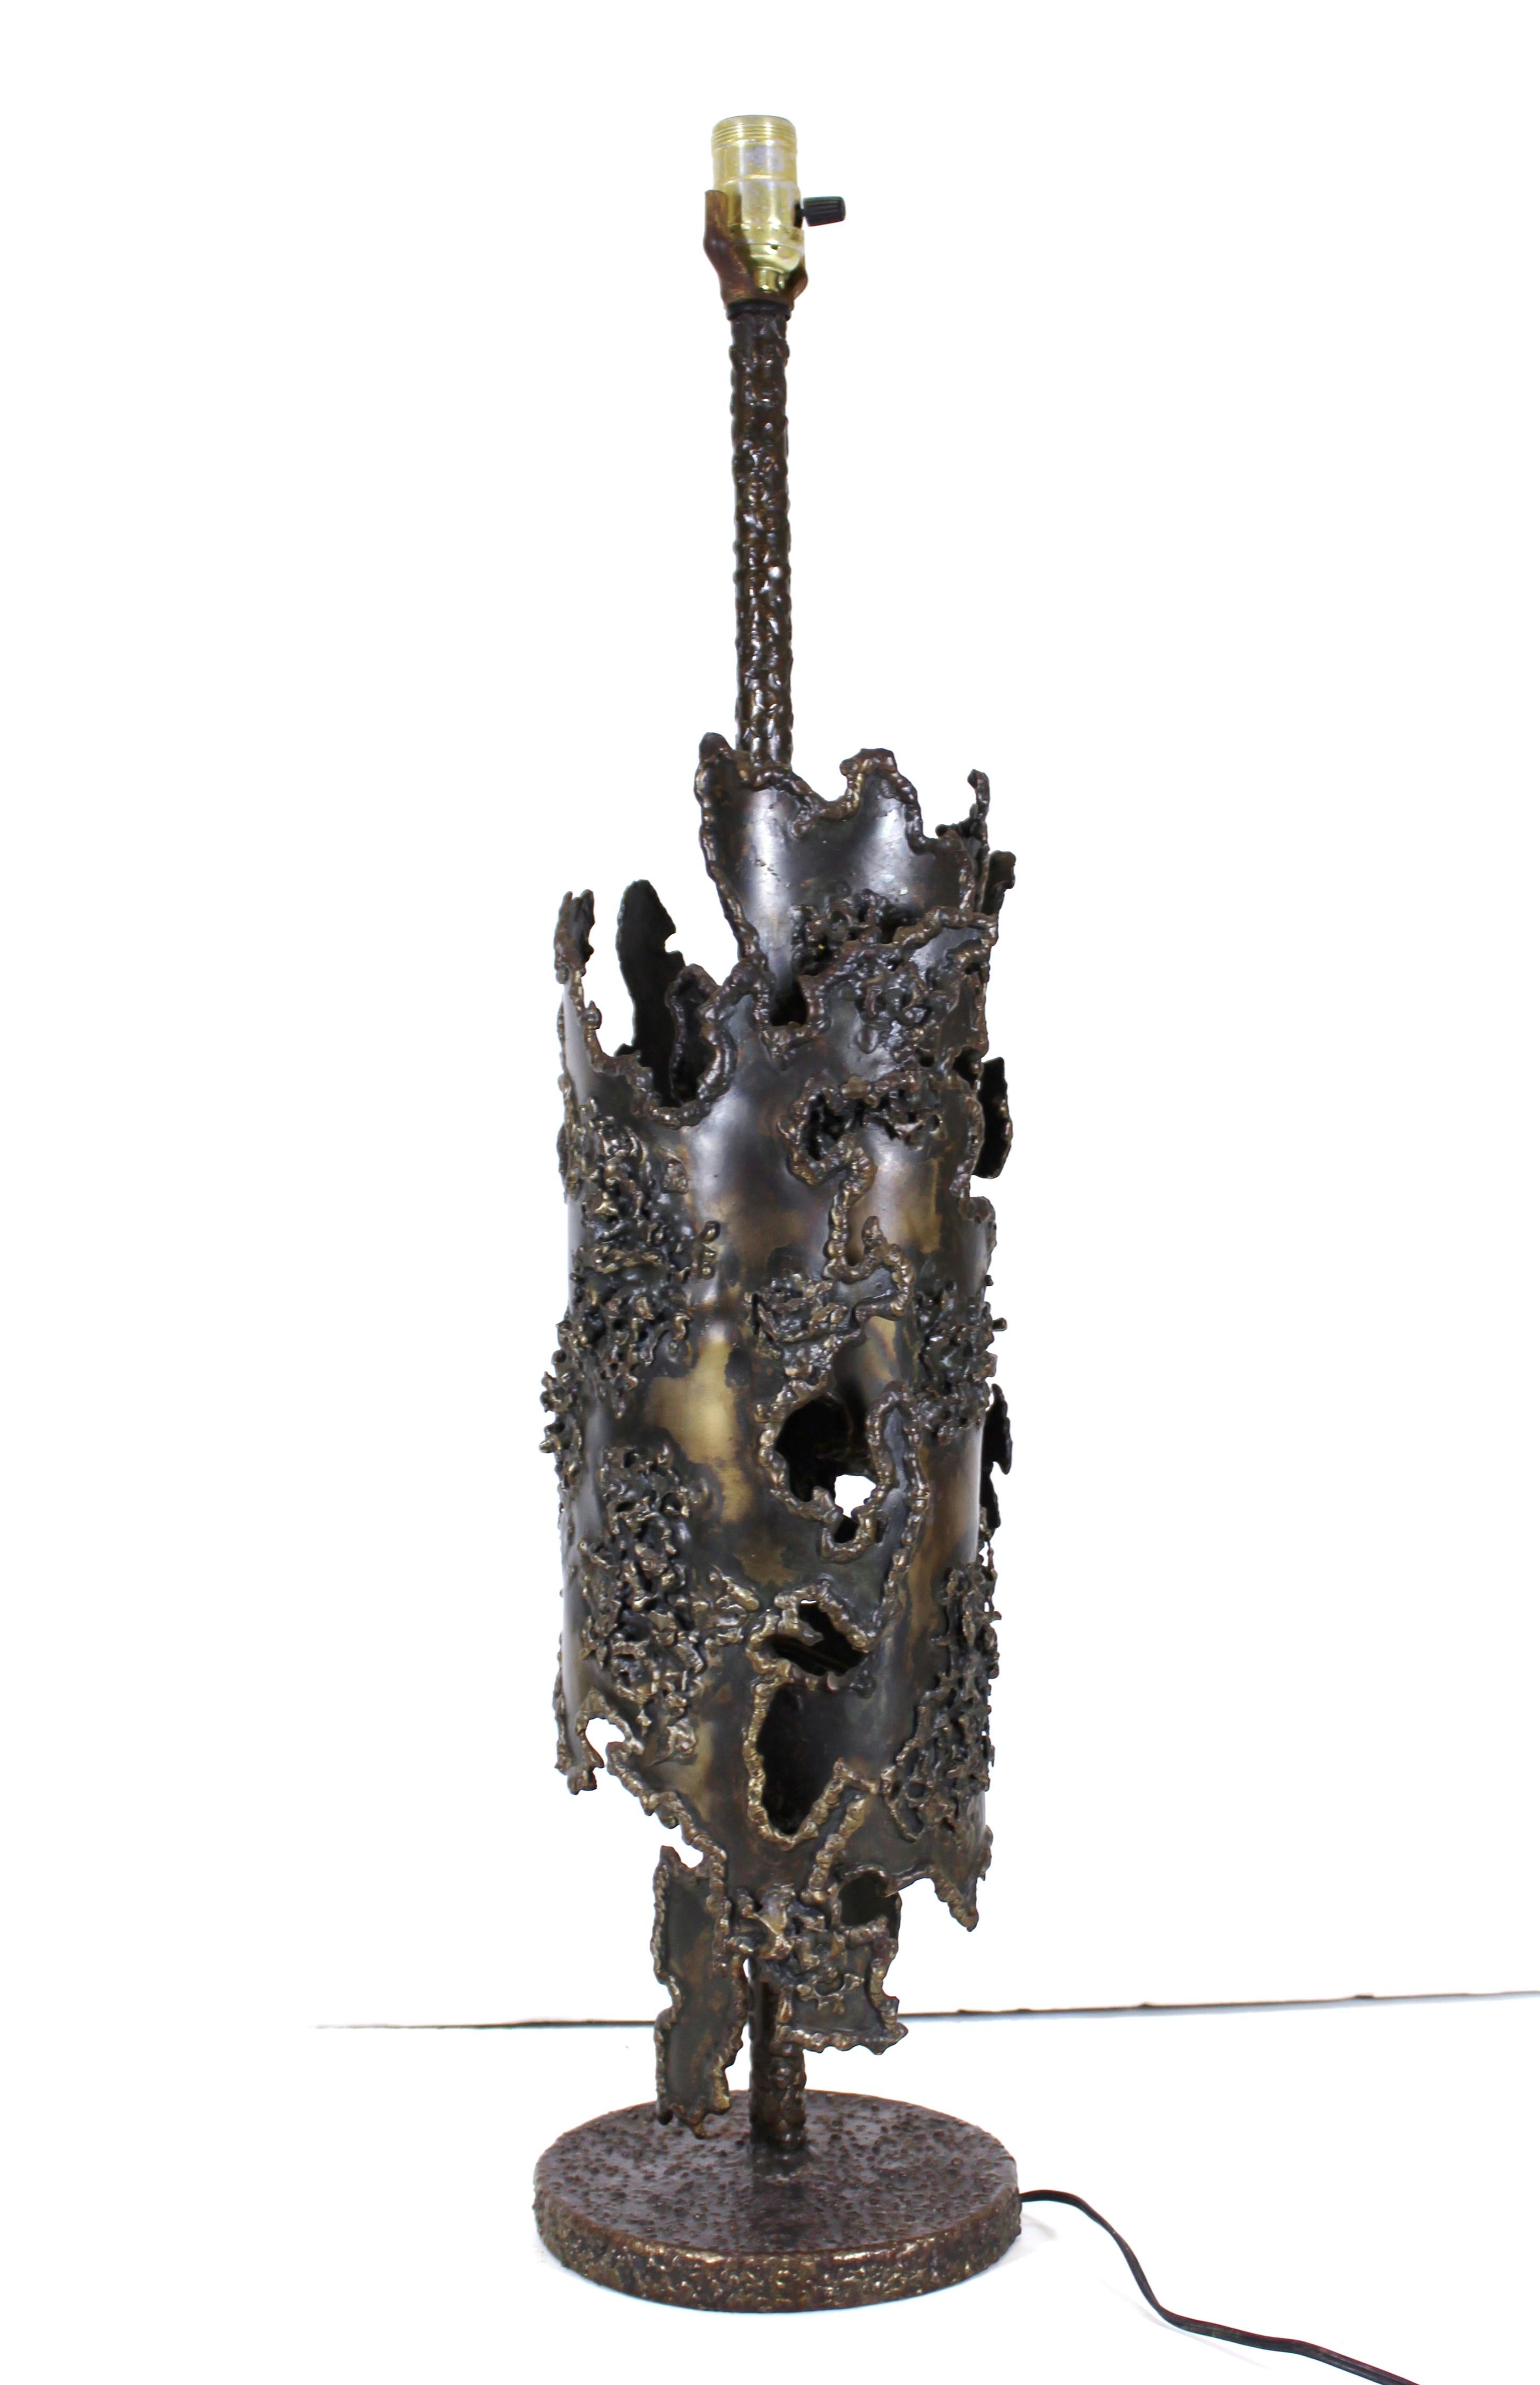 Italienische Tischlampe aus Bronze und Eisen im frühen Brutalismus, entworfen von Marcello Fantoni. Das Stück wurde in den 1970er Jahren hergestellt und hat ein beträchtliches Gewicht. auf der Unterseite befindet sich die Herstellermarke 